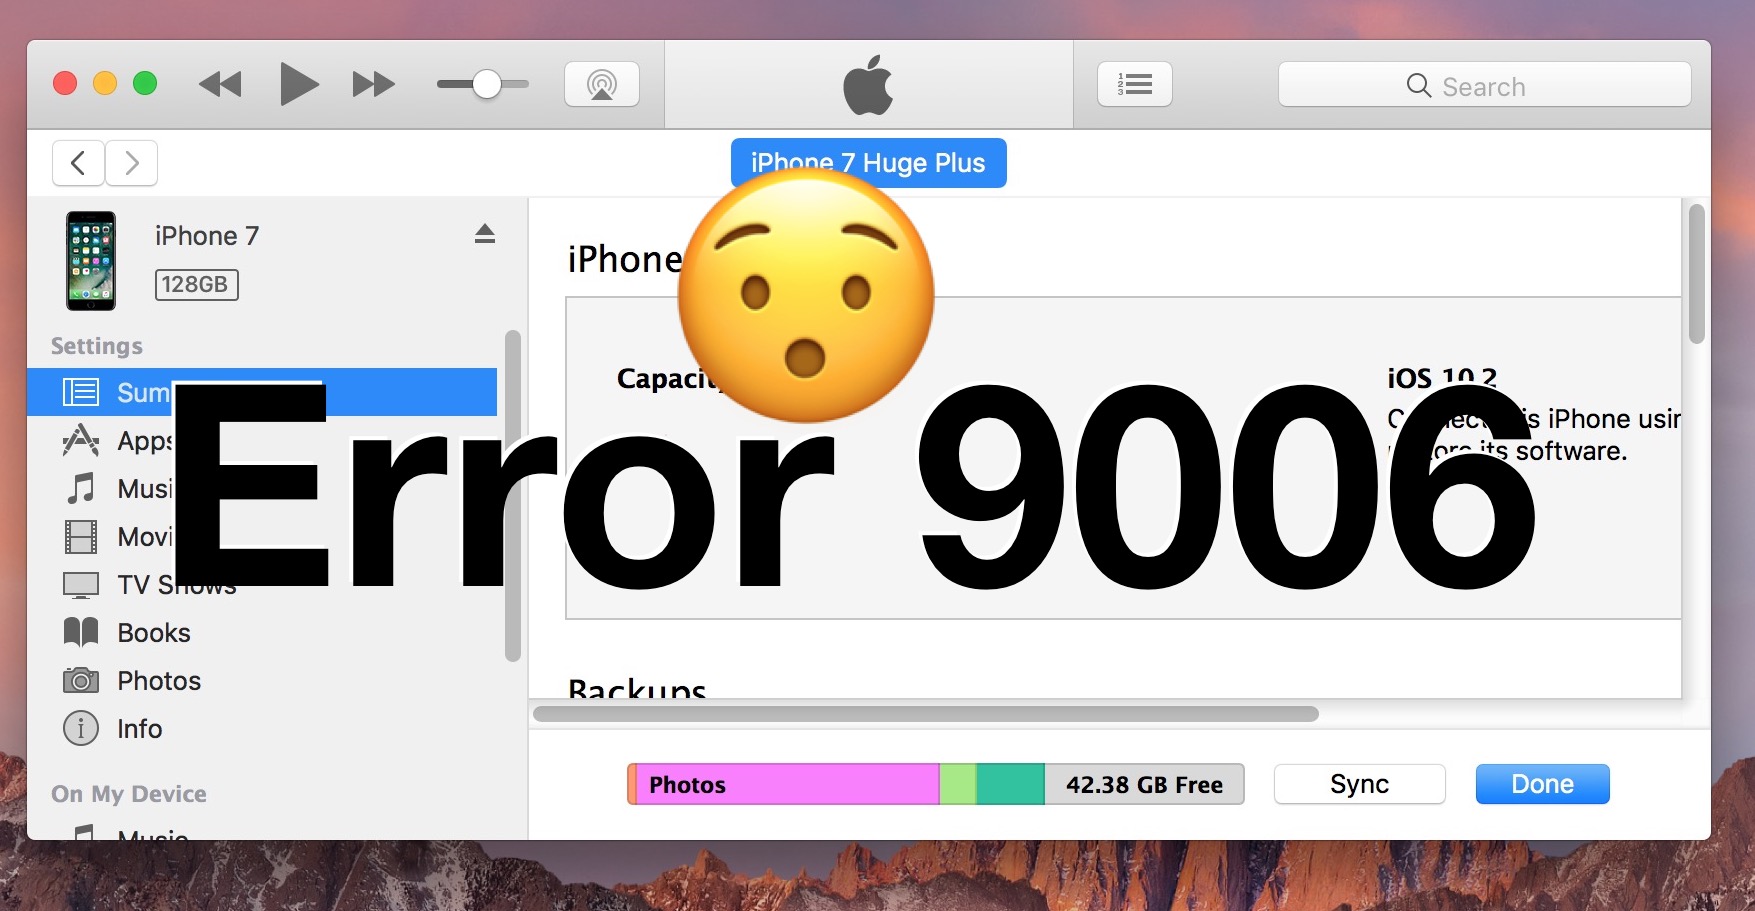 apple download software error 9006